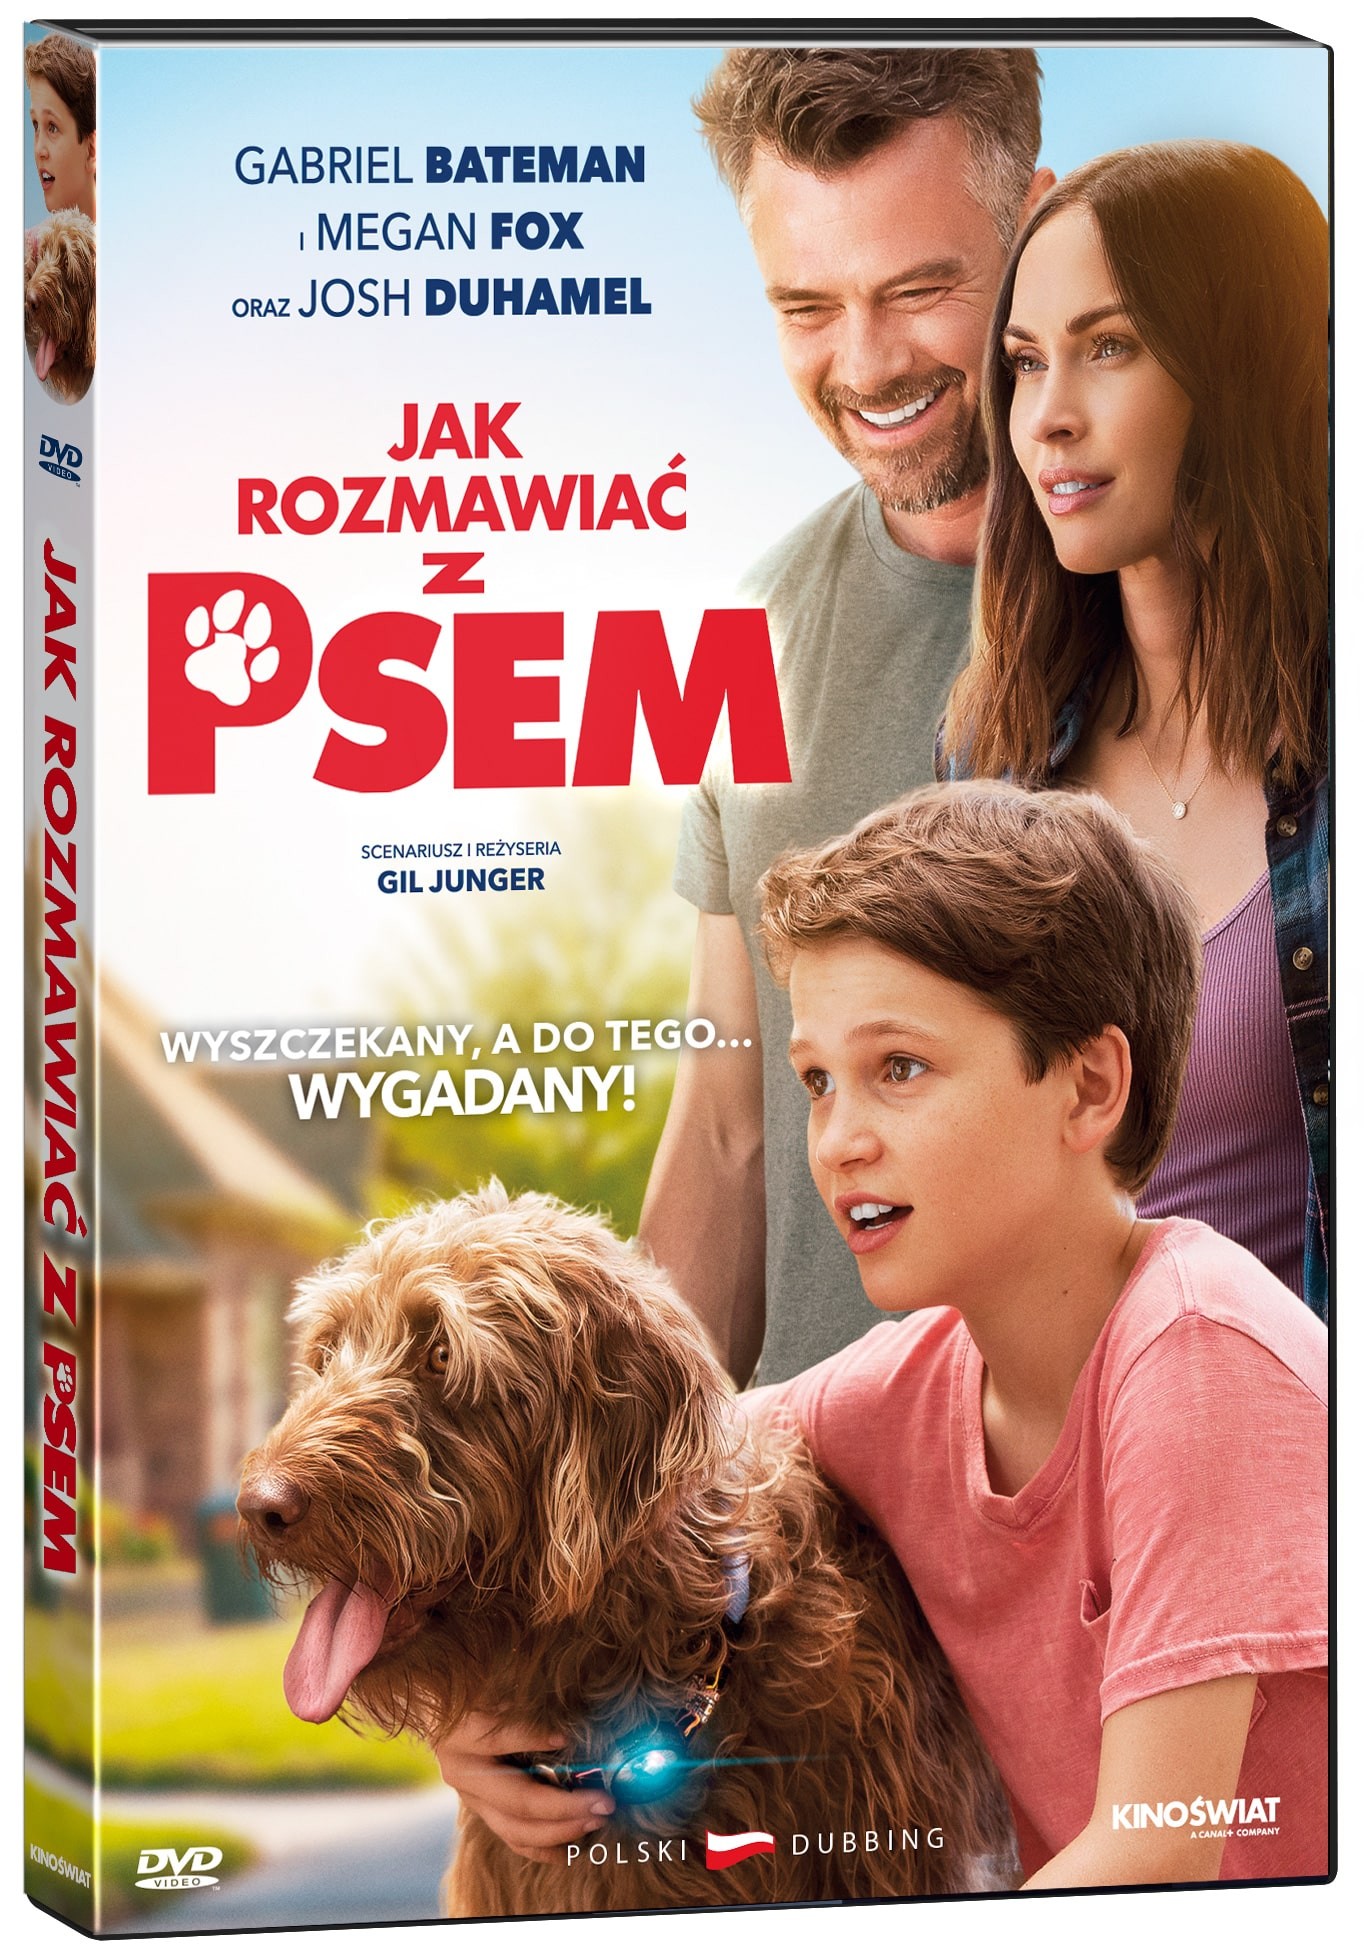 JAK ROZMAWIAC Z PSEM wydanie DVD